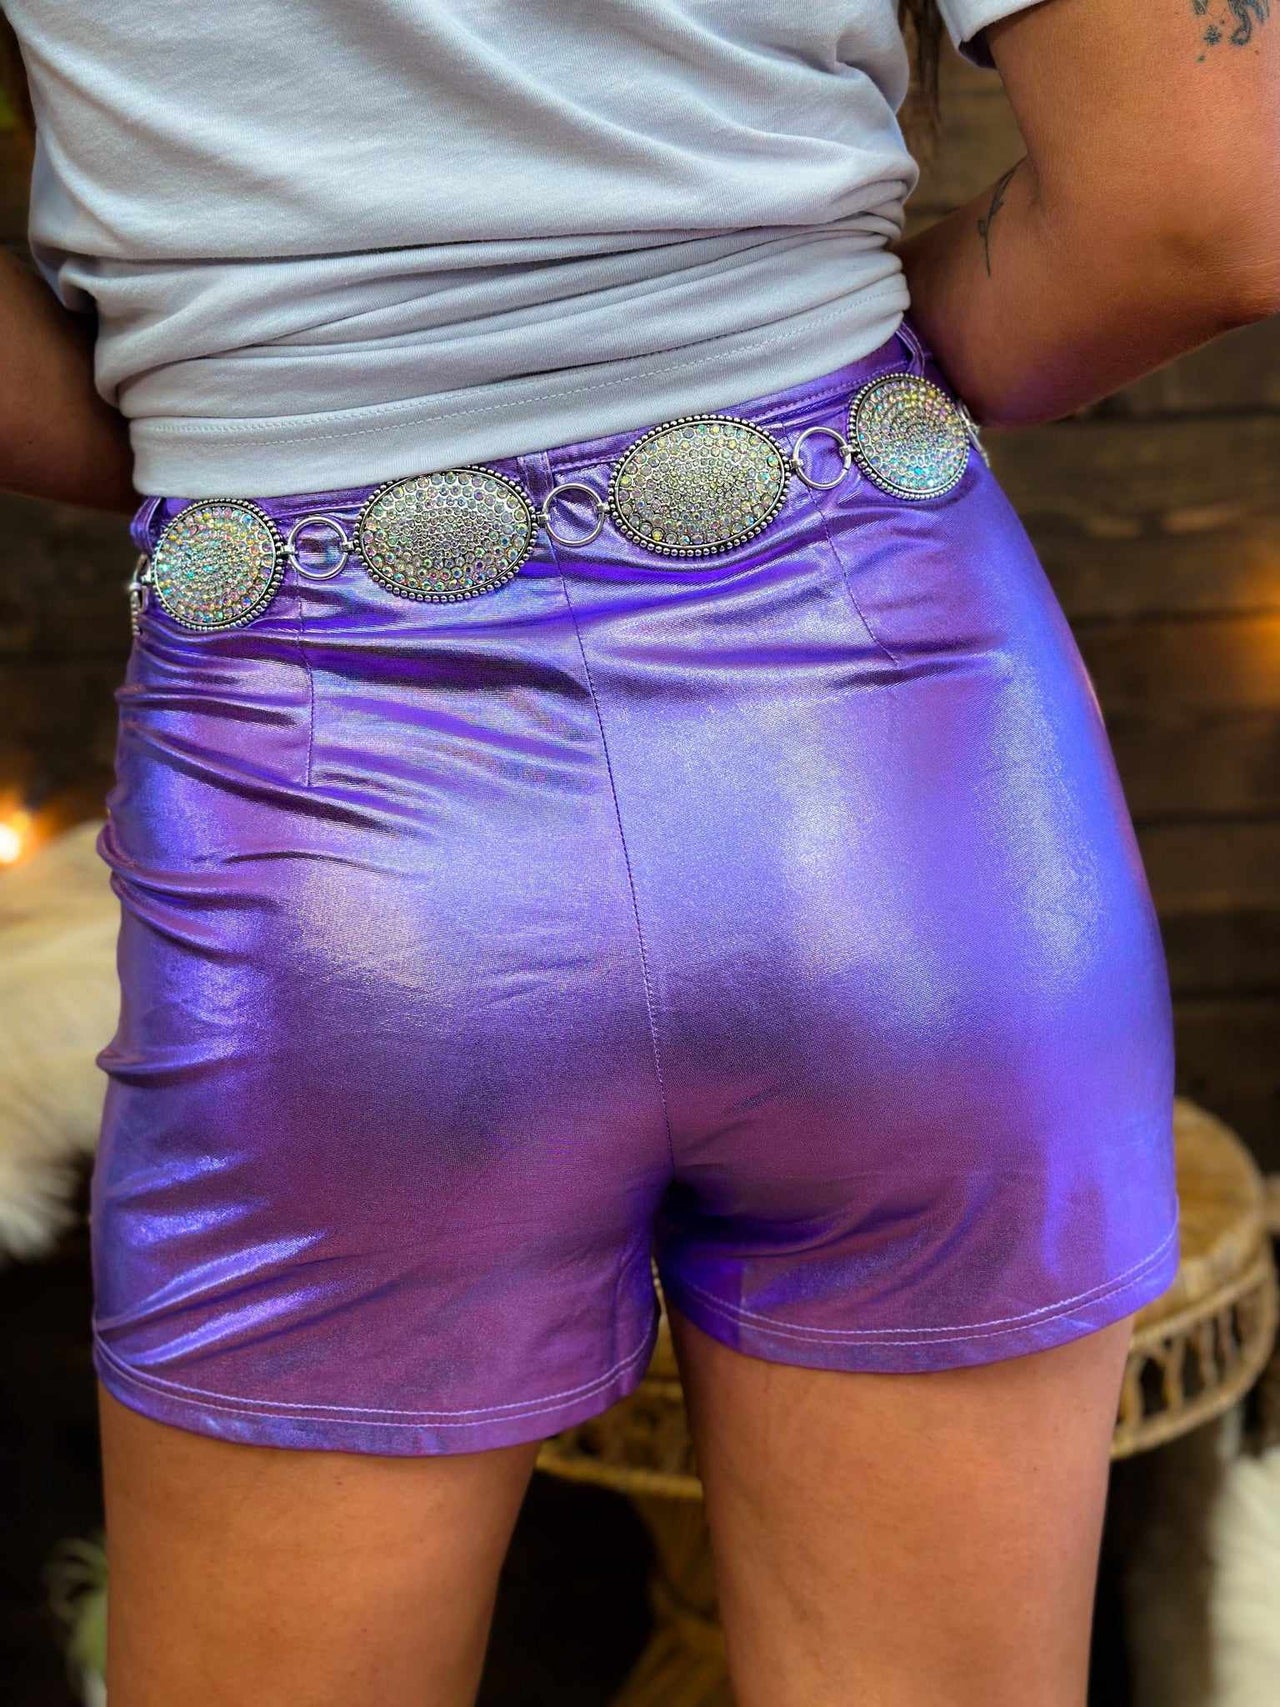 PU leather shorts in metallic purple.